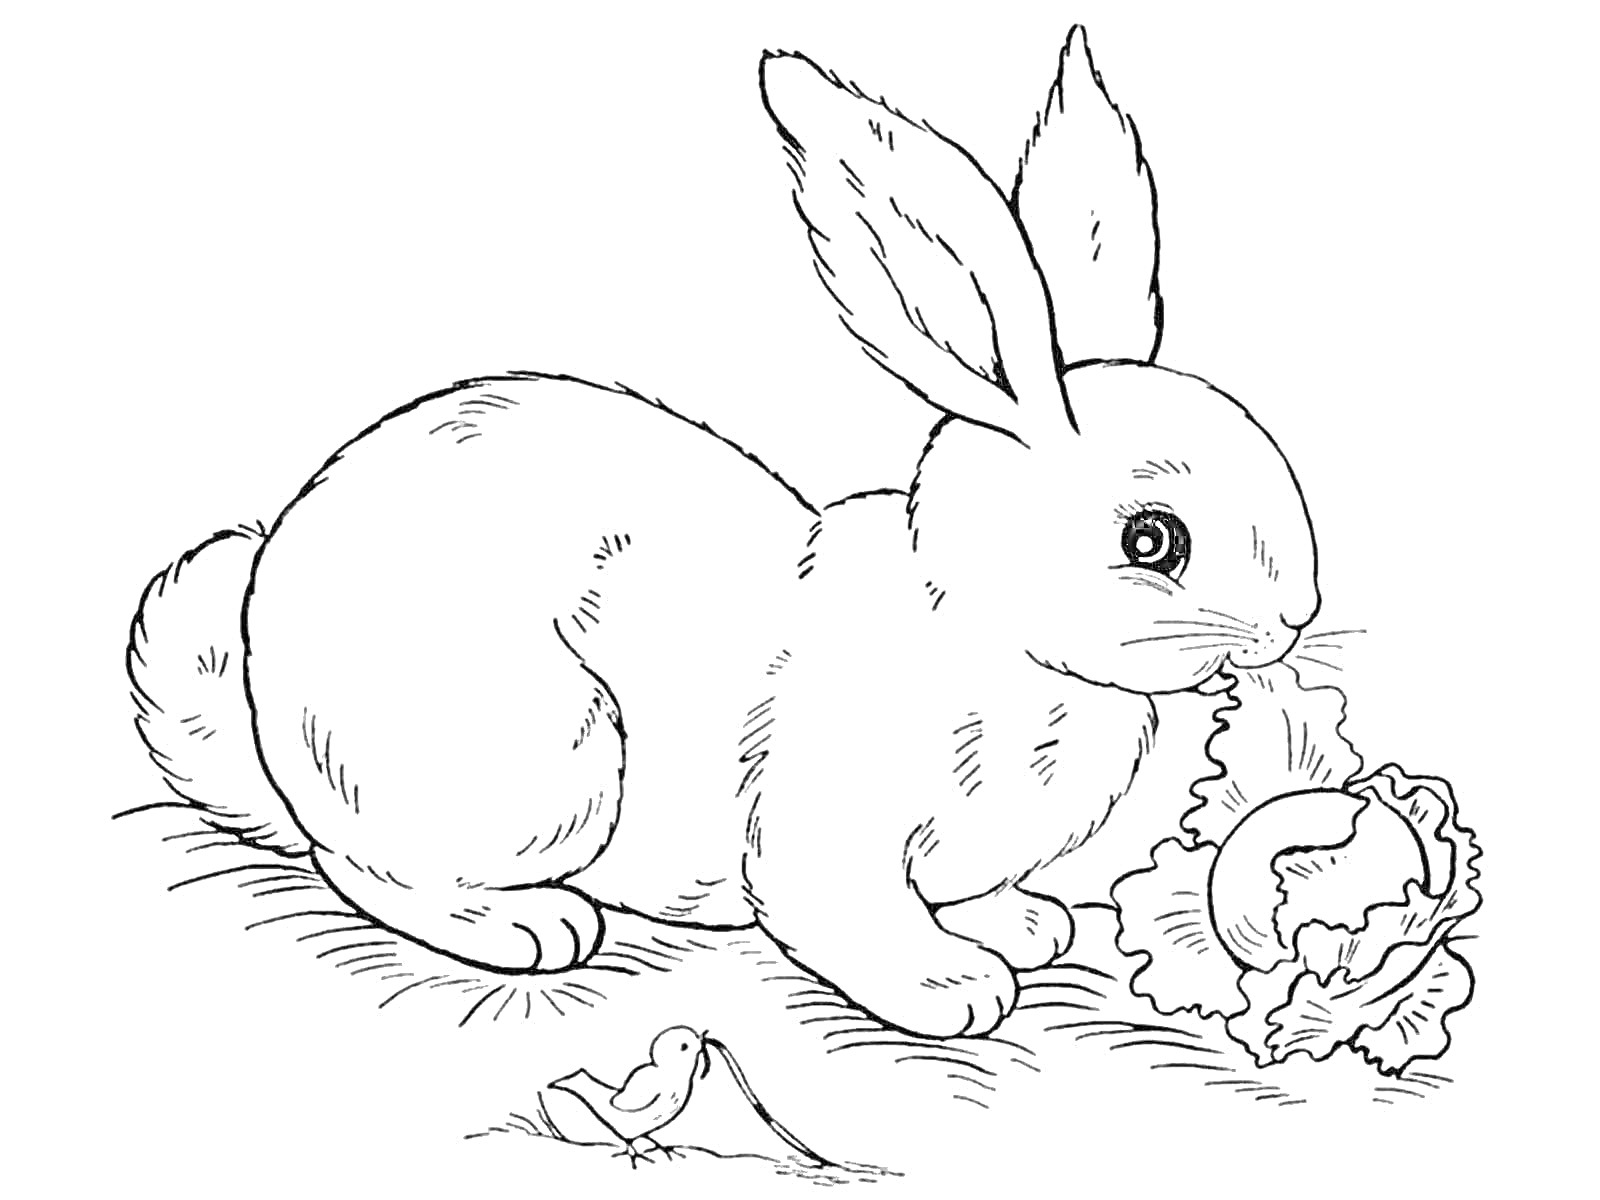 Кролик, кушающий лист салата рядом с маленькой птицей и яблоком